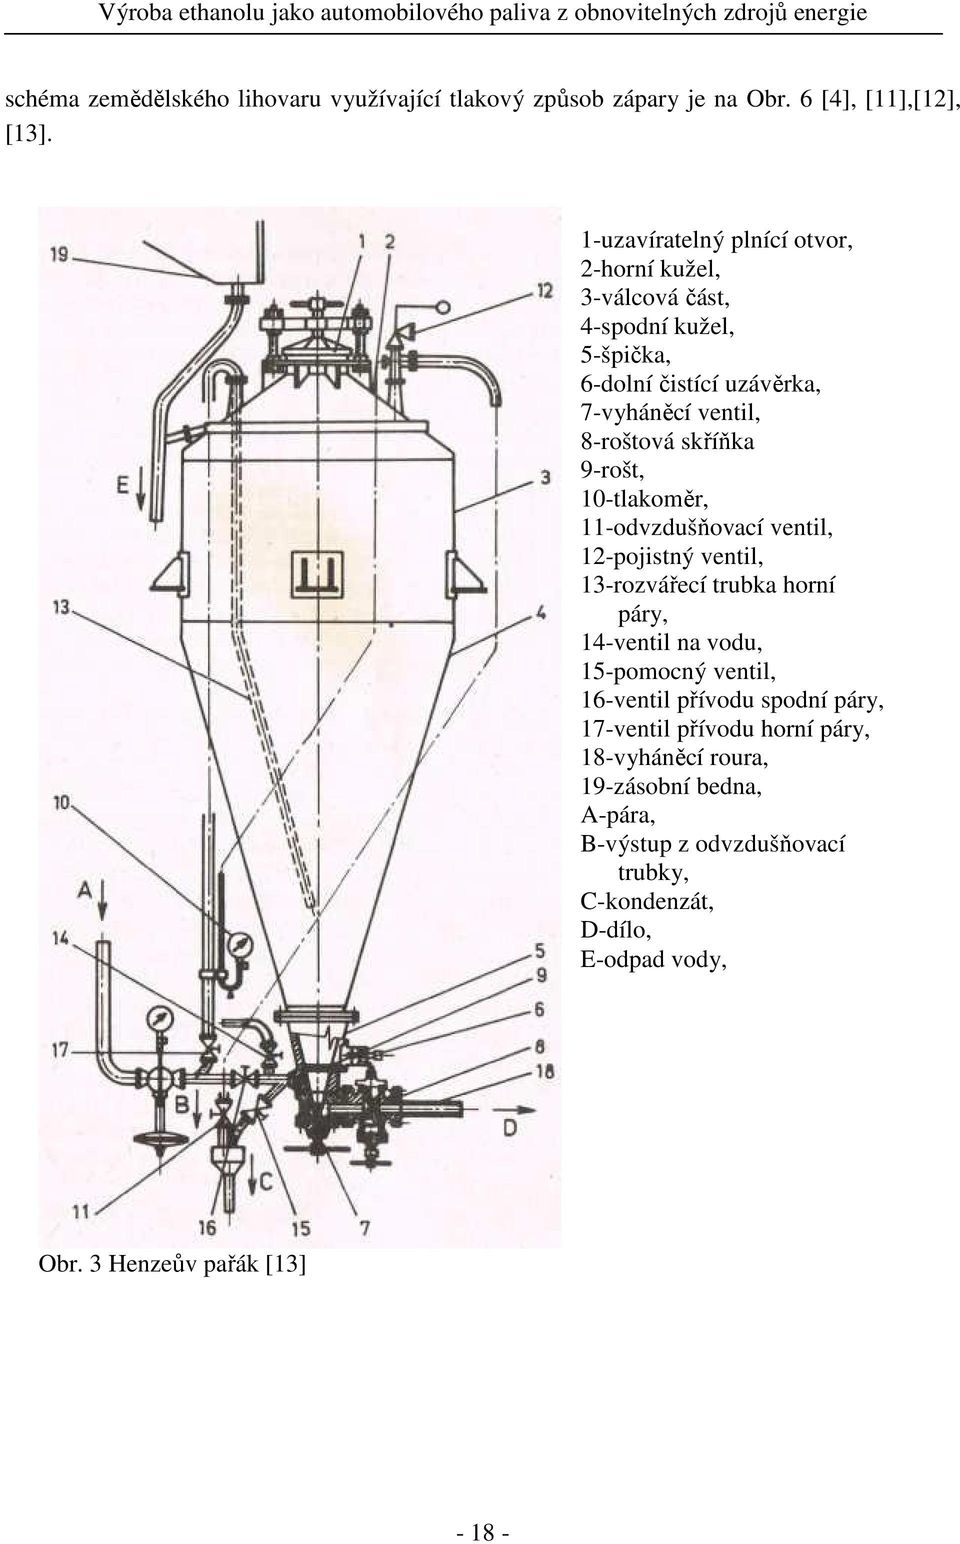 skříňka 9-rošt, 10-tlakoměr, 11-odvzdušňovací ventil, 12-pojistný ventil, 13-rozvářecí trubka horní páry, 14-ventil na vodu, 15-pomocný ventil,